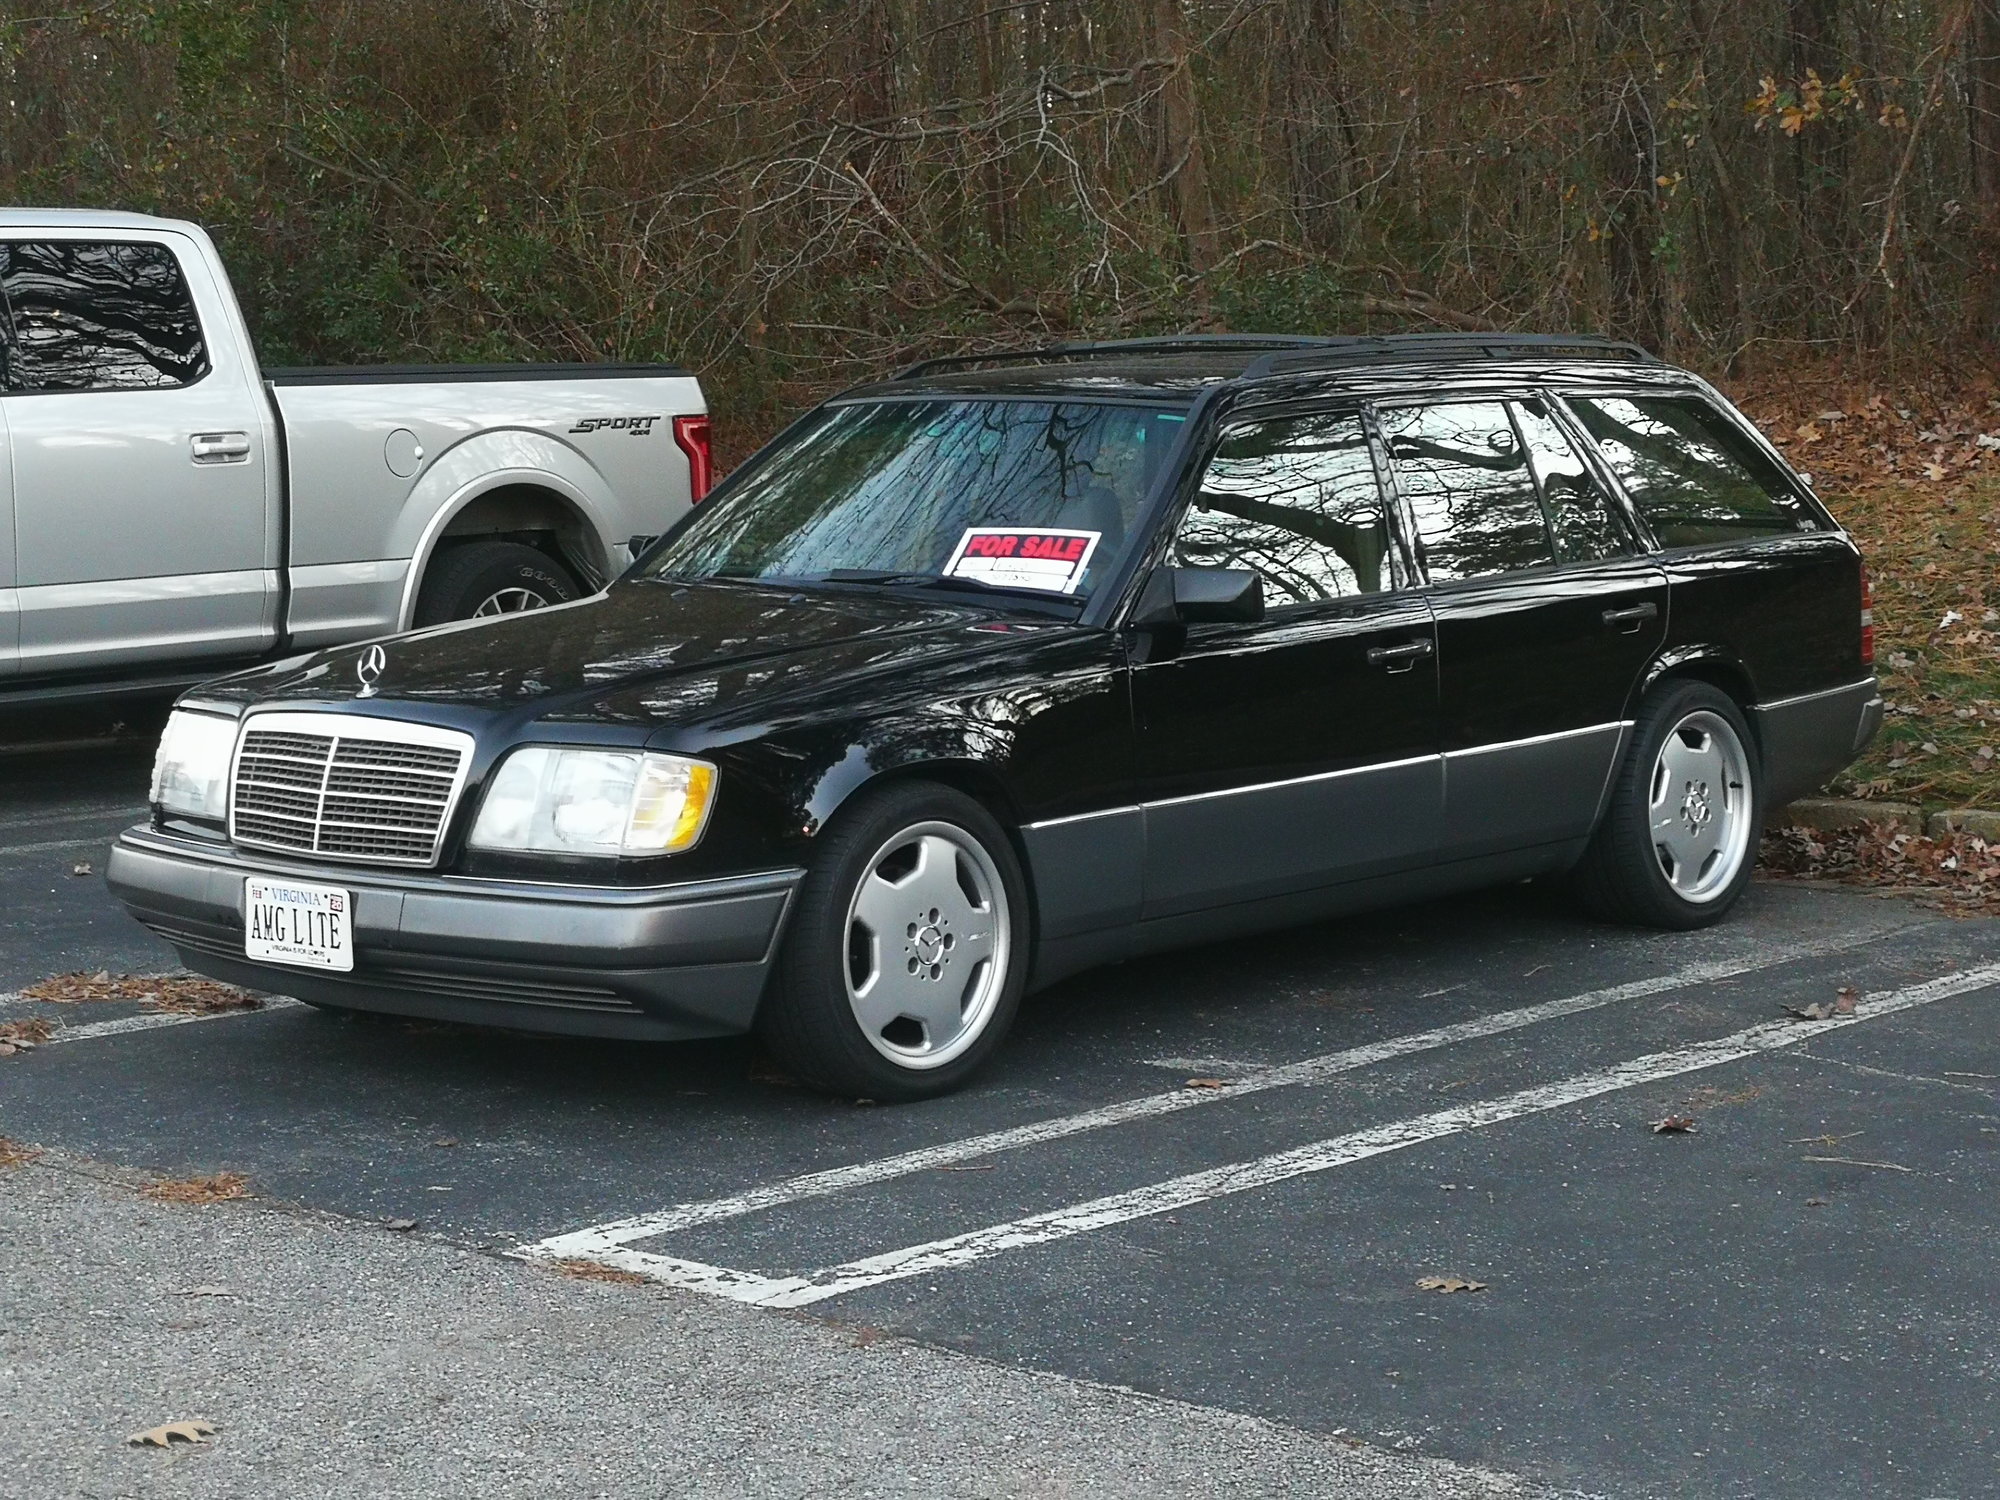 1995 Mercedes-Benz E320 - 1995 W124 E320 wagon 197k $4100 - Used - VIN WDBEA92E8SF322593 - 197,400 Miles - 6 cyl - 2WD - Automatic - Wagon - Black - Richmond, VA 23225, United States